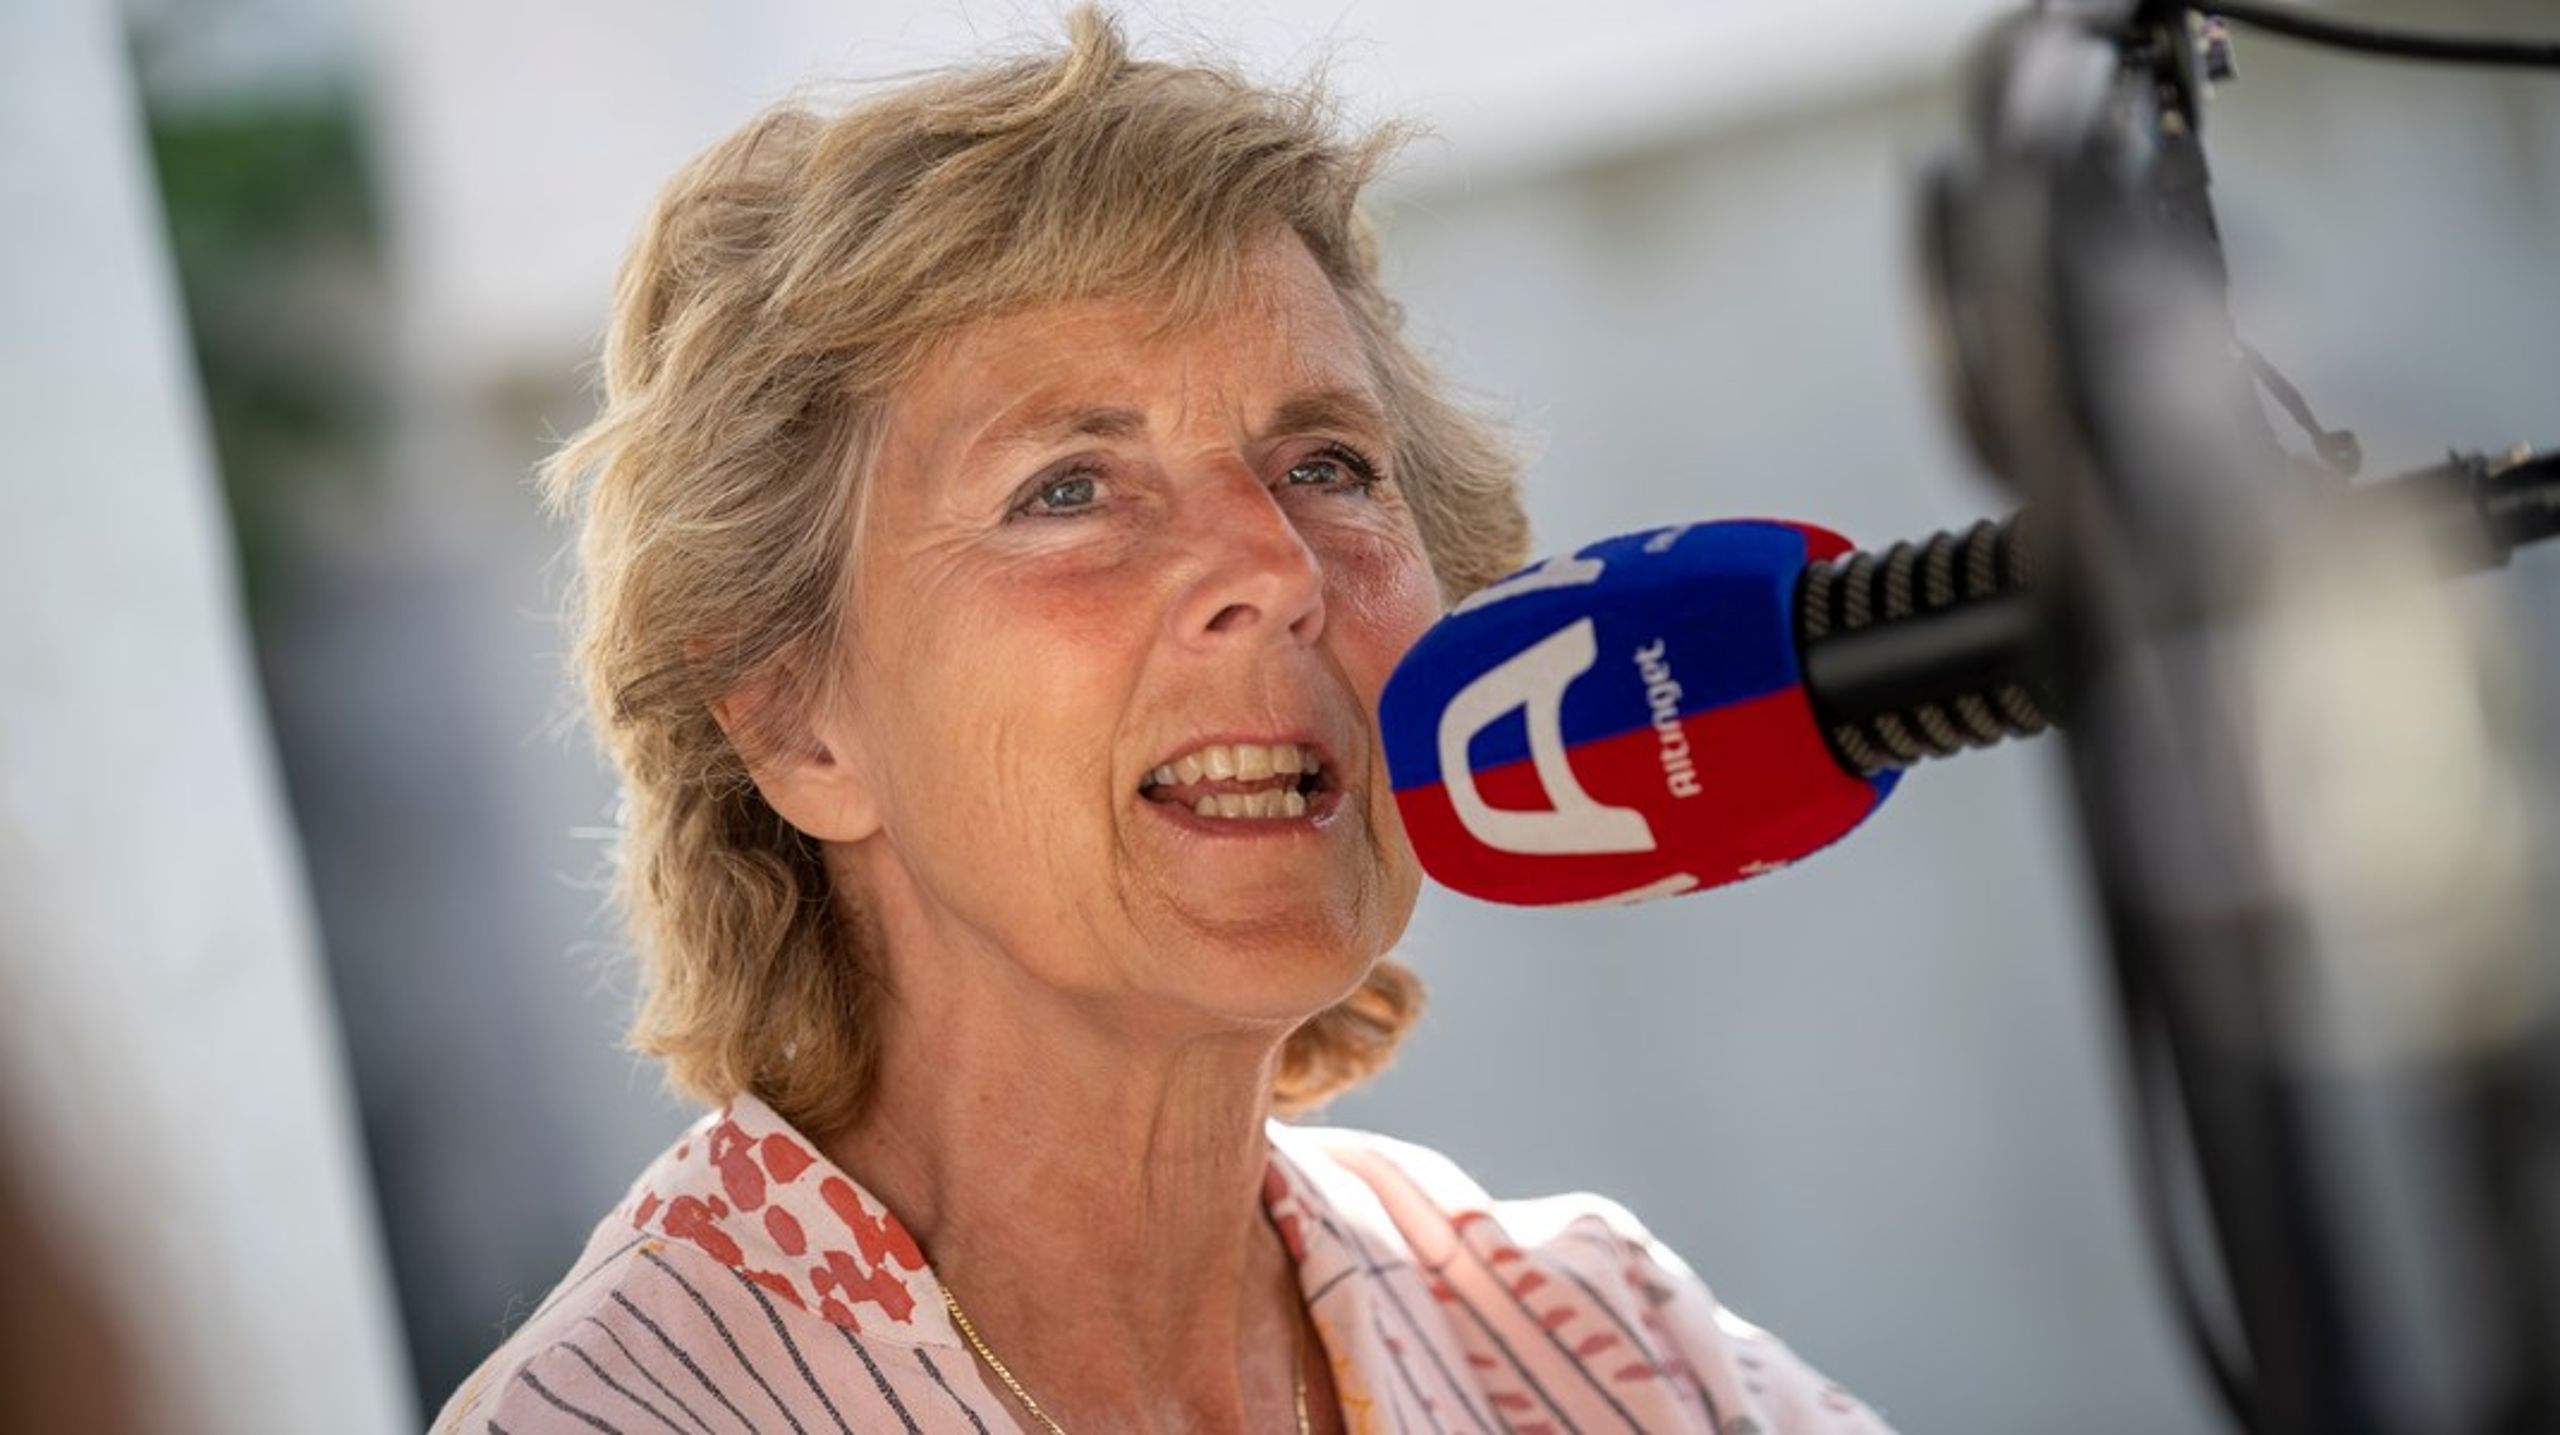 "Socialdemokratiets uvillighed til at ville tage fat på landbruget har noget at gøre med, at der er nogle vælgere, man ikke vil genere," lød det fra Connie Hedegaard på Folkemødet, da hun efterspurgte en offentlig debat om den grønne omstillings konsekvenser.